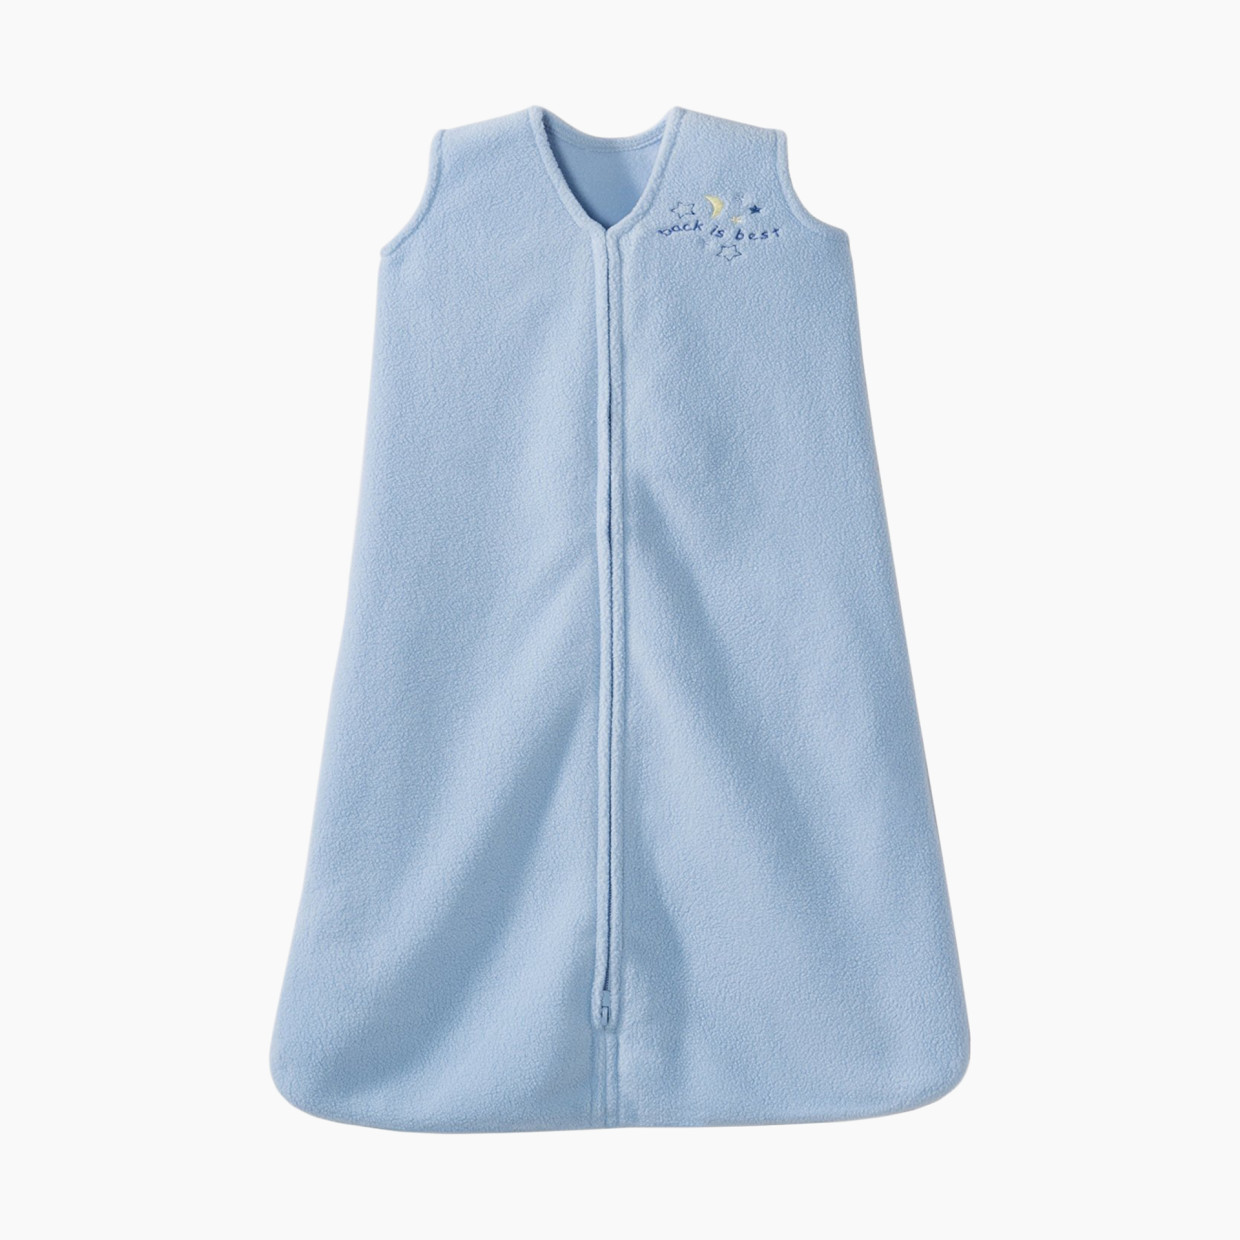 Halo SleepSack Wearable Blanket (Micro-Fleece) - Blue, Small.